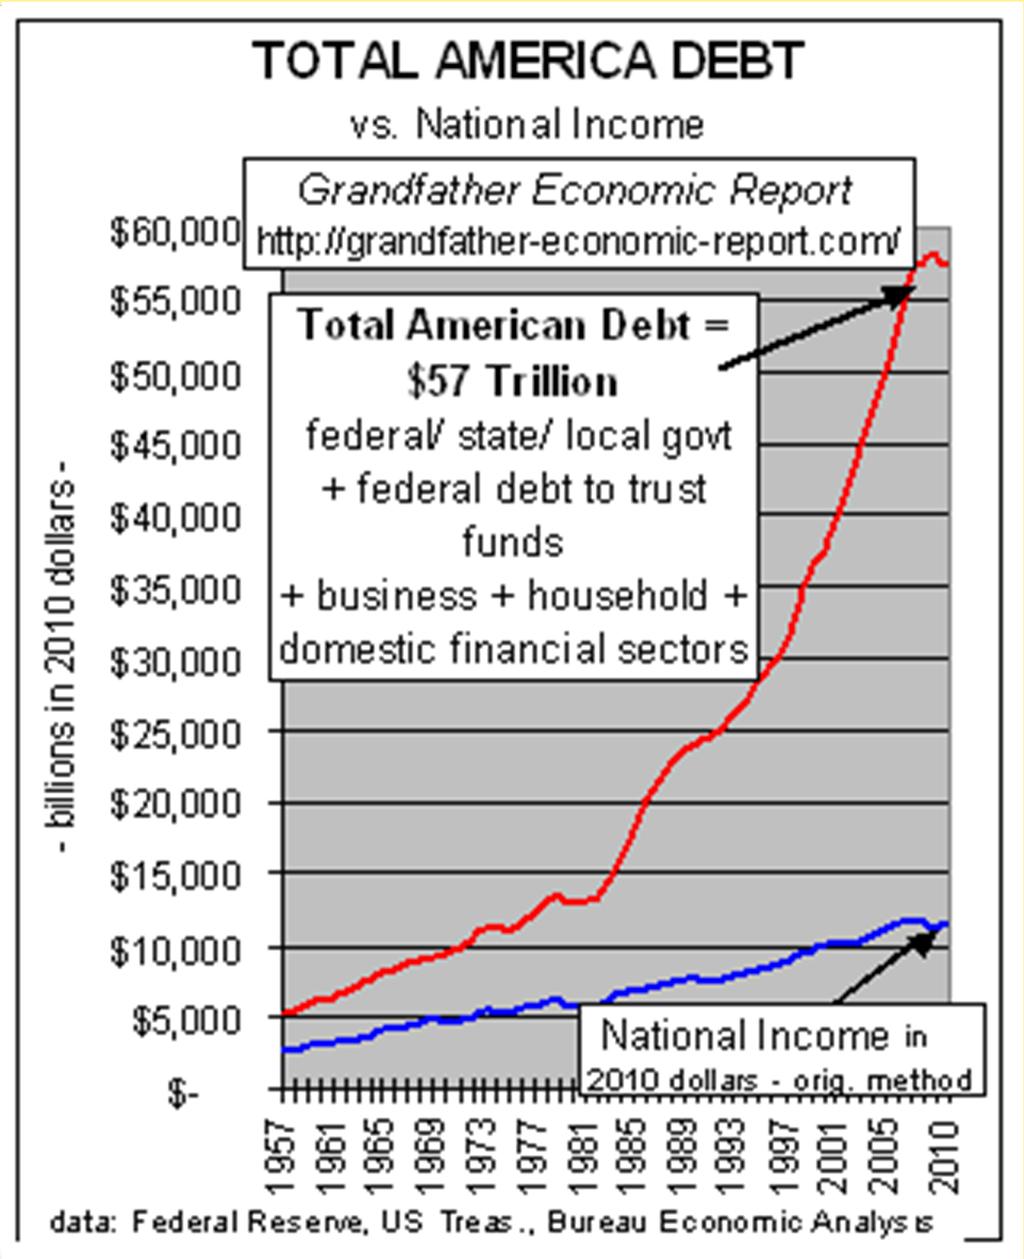 Total Debt = $57 Trillion!